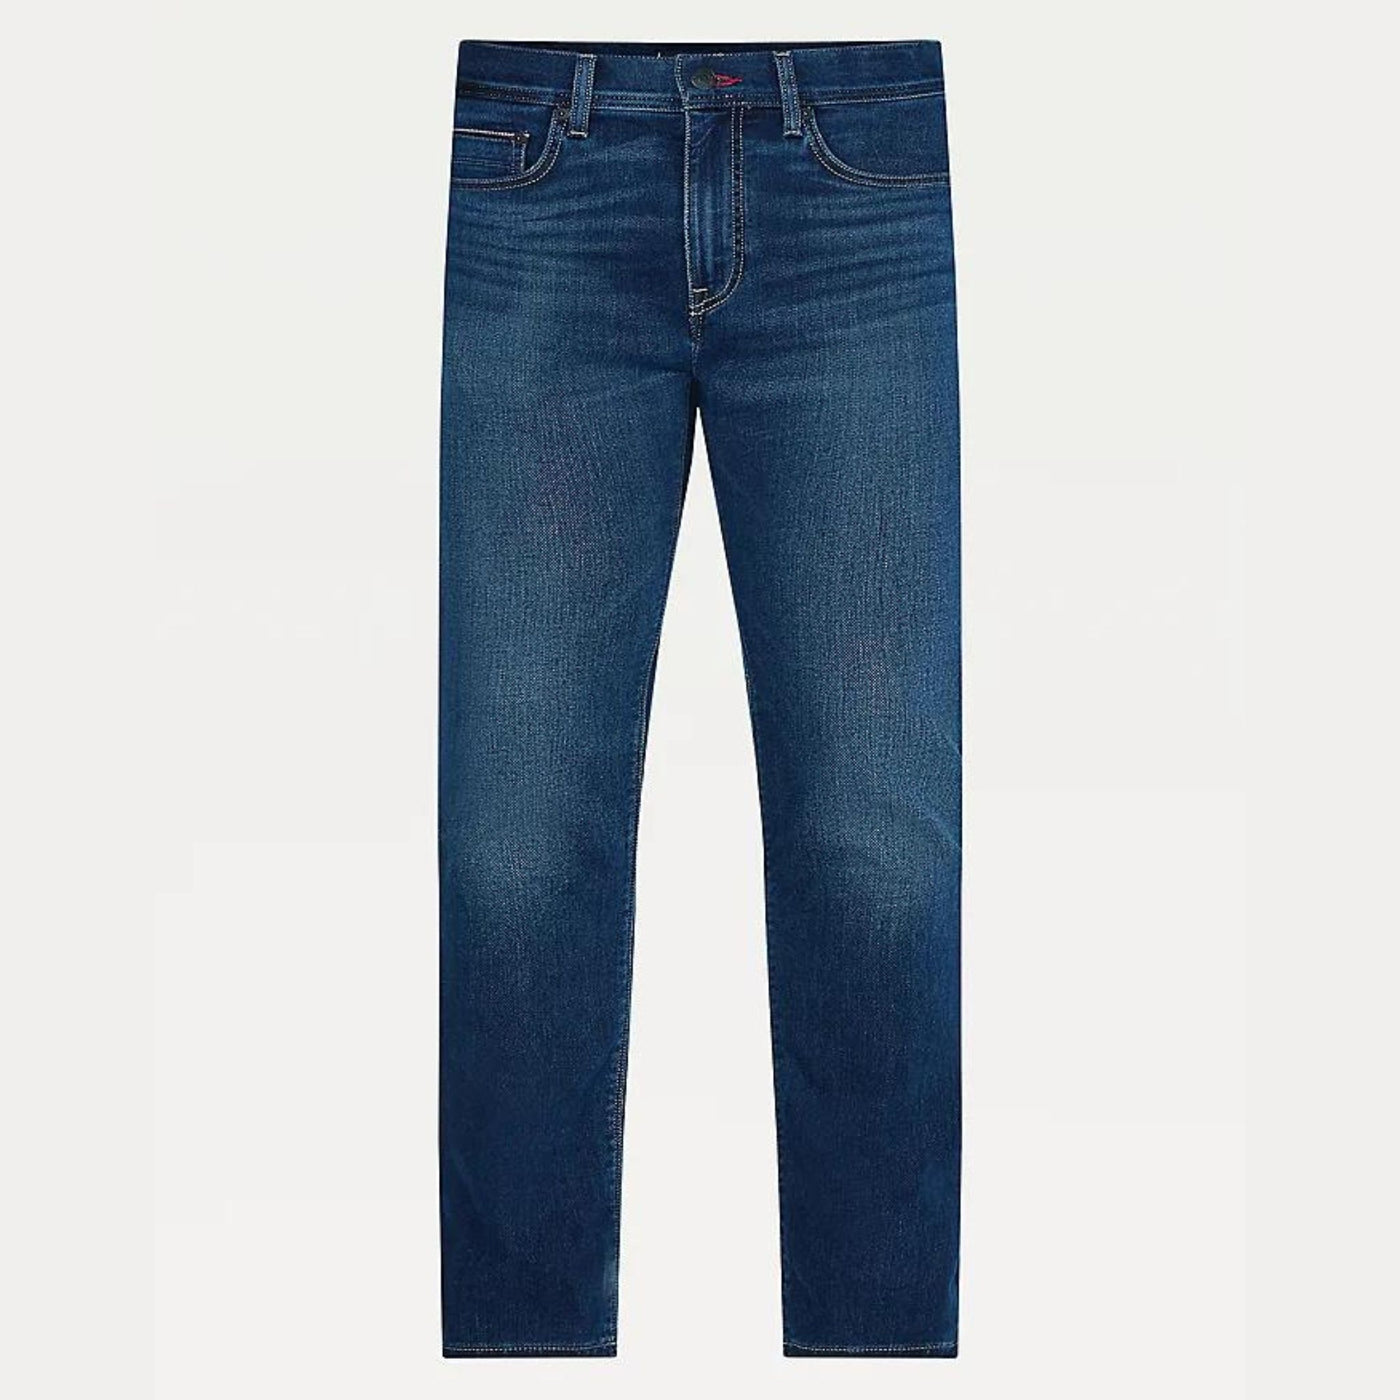 Jeans da uomo firmati Tommy Hilfiger in misto cotone con scoloriture su cosce e ginocchia. Visuale frontale. 